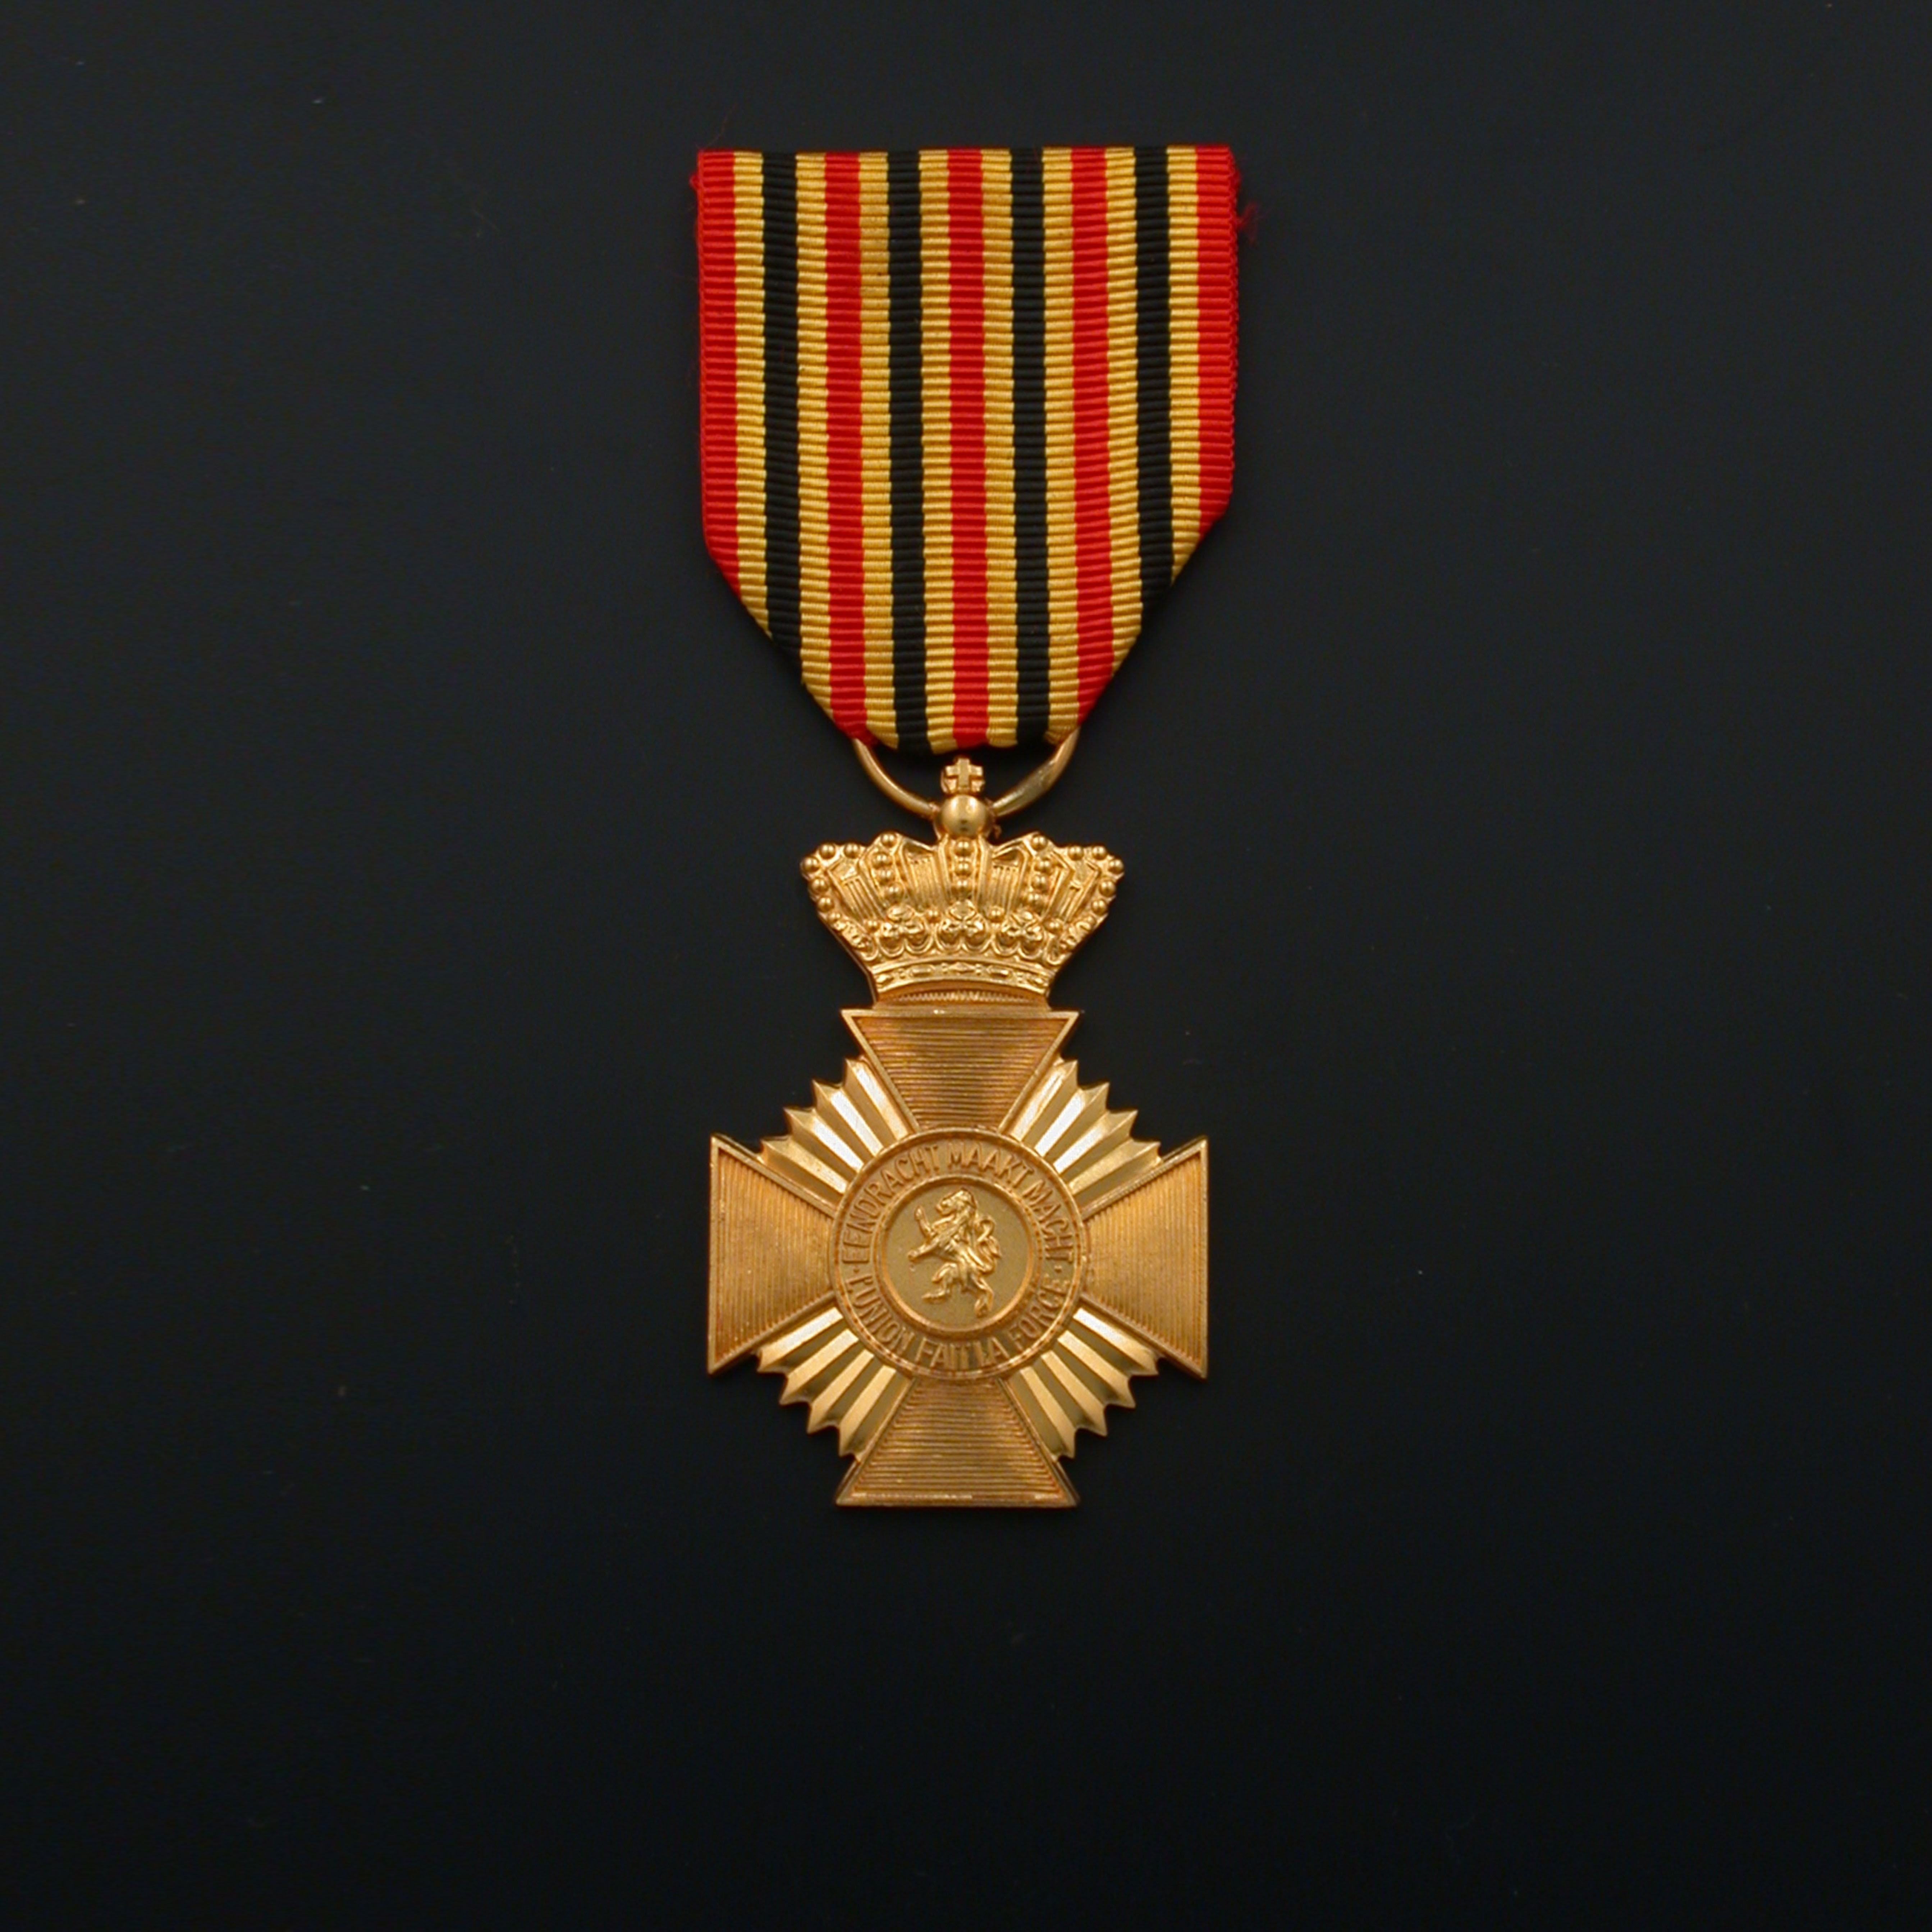 officieel-militair-ereteken-medaille-2e-klasse-01-01-08-militair-militaire-medaille-2e-klasse-officieel-model.jpg